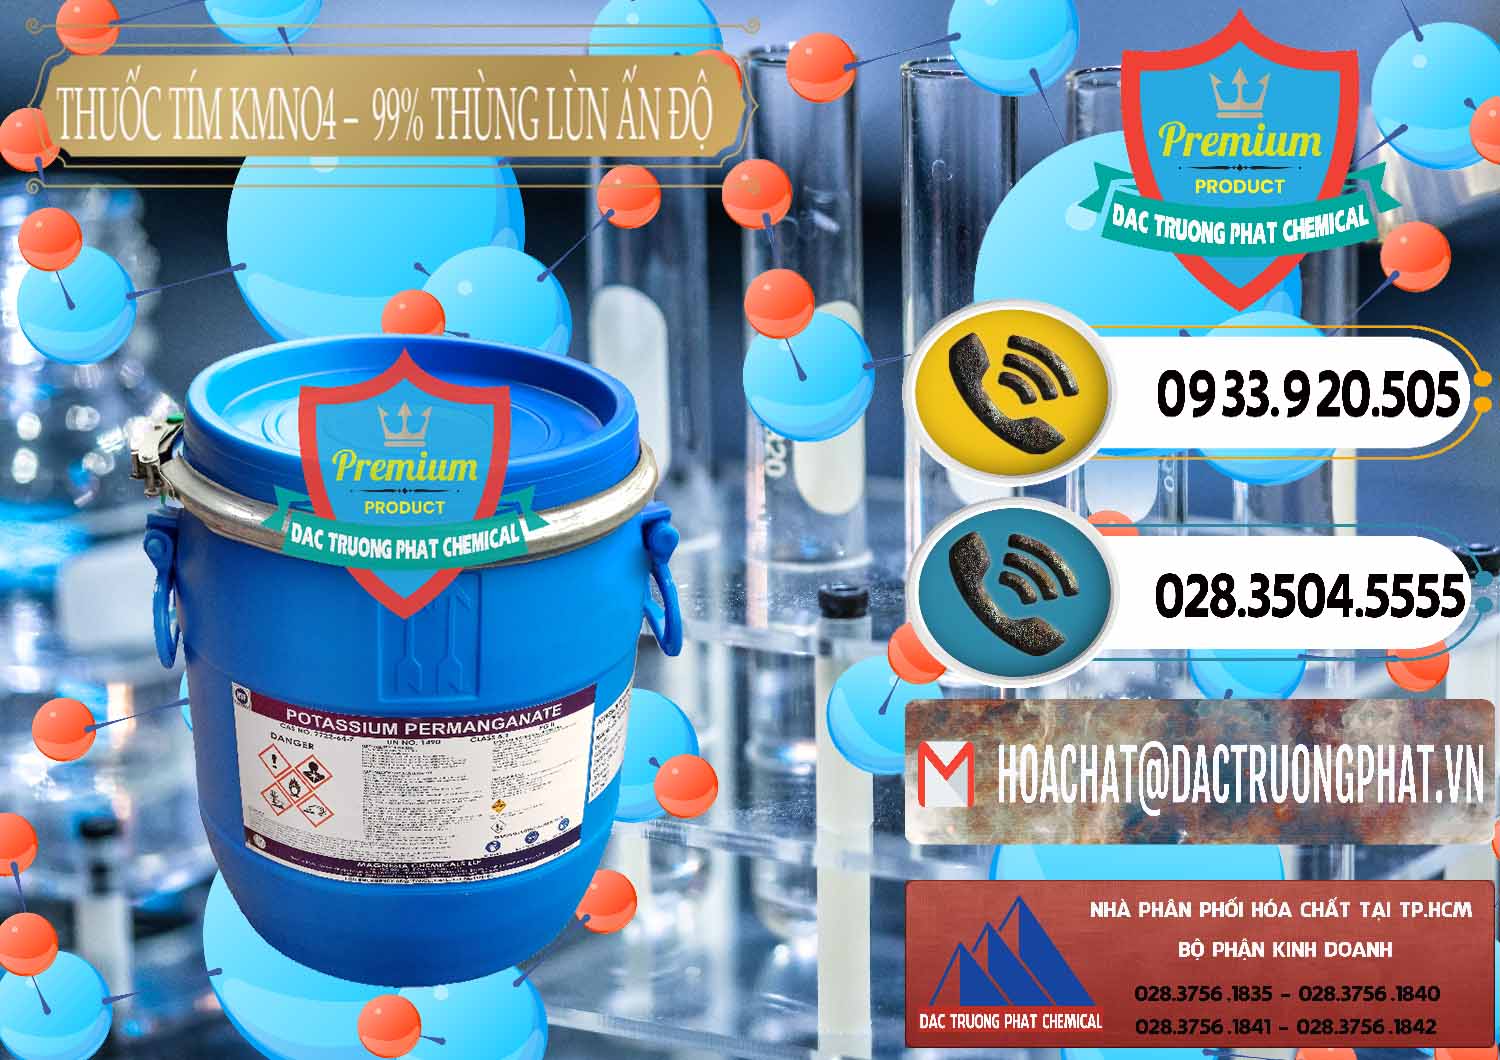 Nơi kinh doanh & bán Thuốc Tím - KMNO4 Thùng Lùn 99% Magnesia Chemicals Ấn Độ India - 0165 - Công ty phân phối ( cung cấp ) hóa chất tại TP.HCM - hoachatdetnhuom.vn